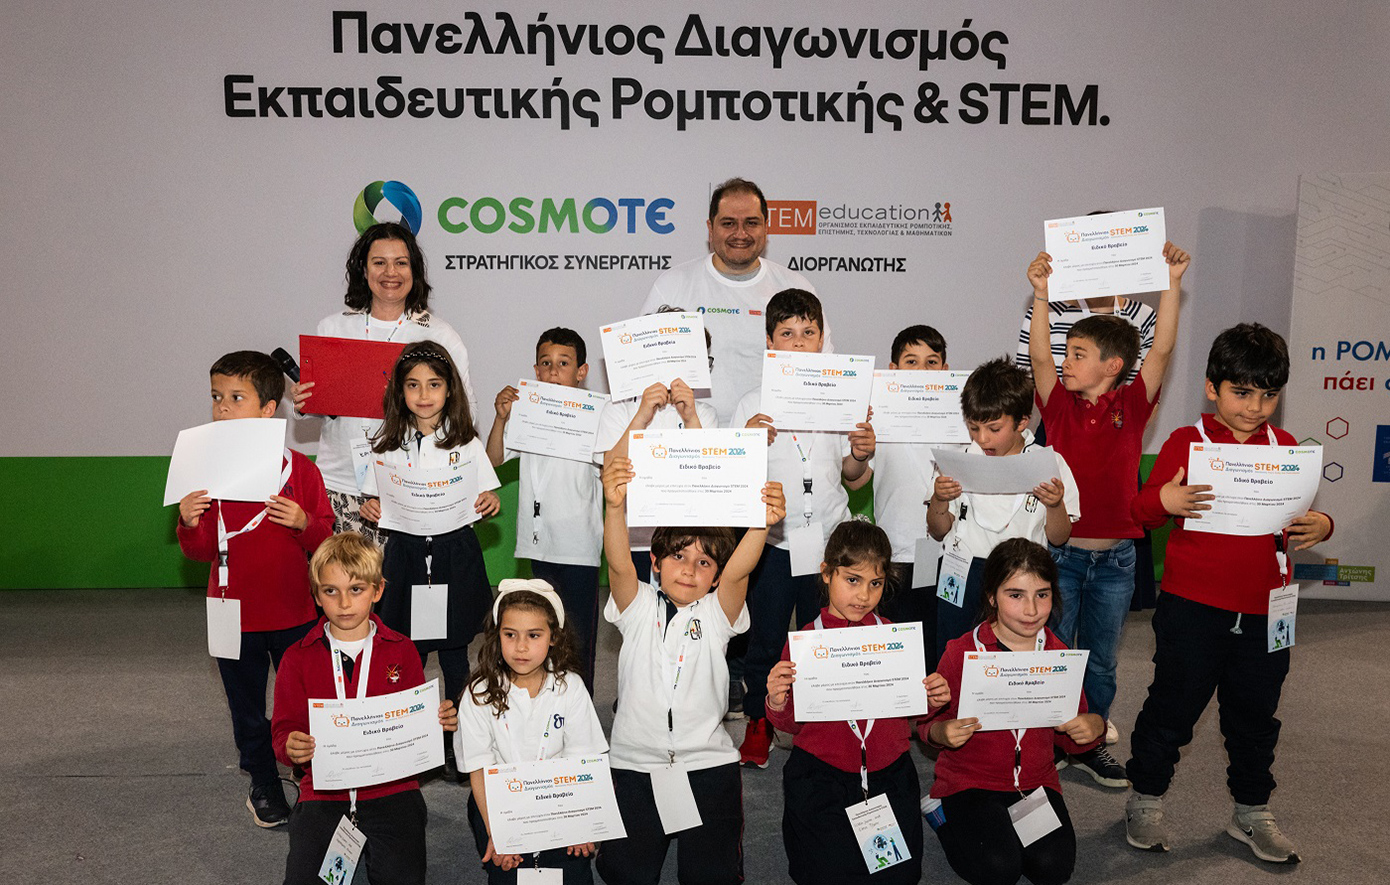 10 χρόνια η COSMOTE συμβάλλει στη διάδοση και ανάπτυξη της Εκπαιδευτικής Ρομποτικής στην Ελλάδα